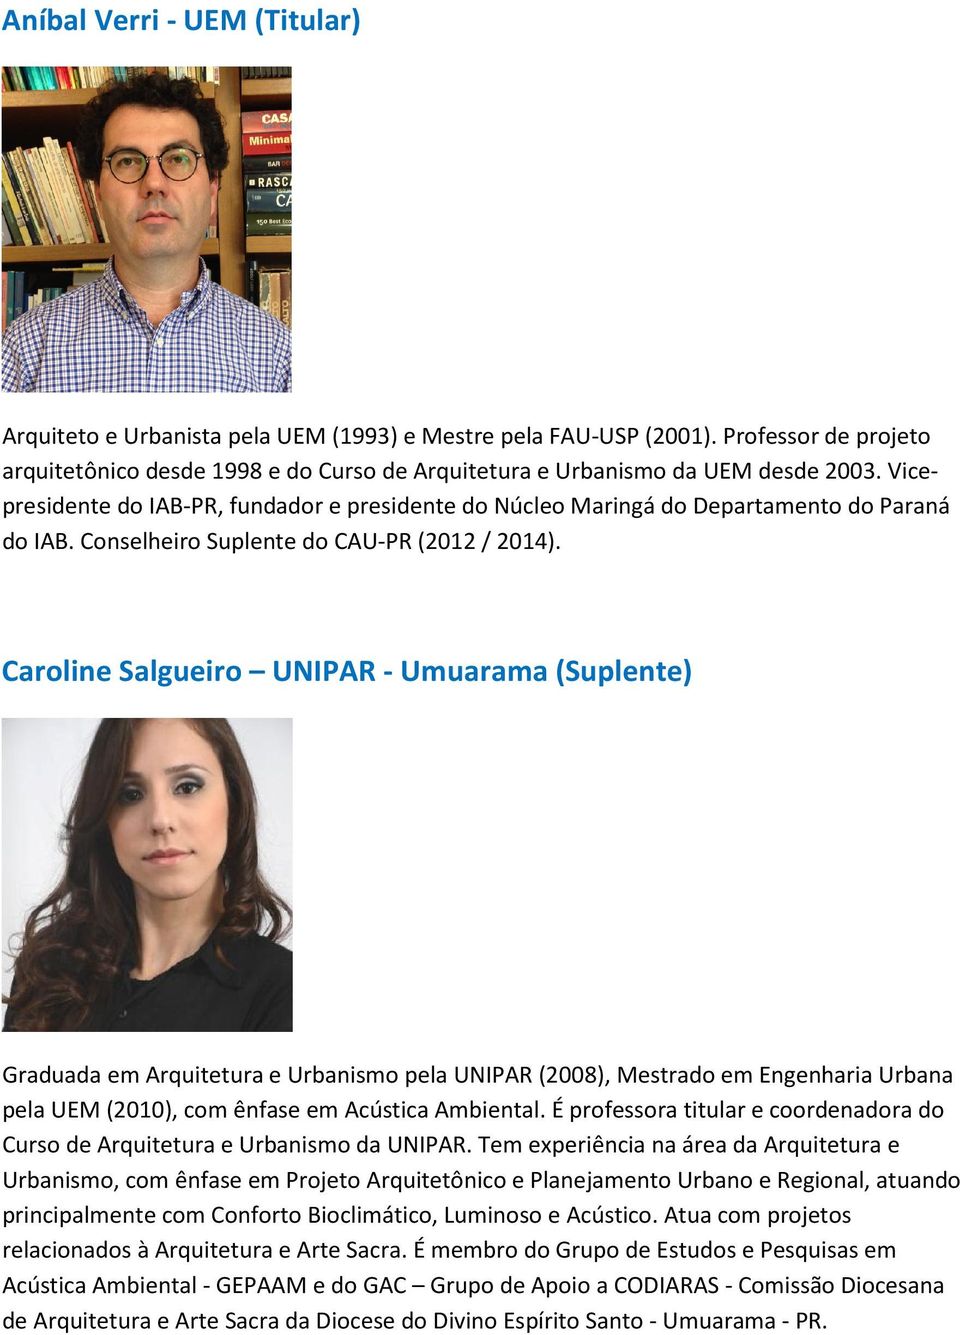 Caroline Salgueiro UNIPAR - Umuarama (Suplente) Graduada em Arquitetura e Urbanismo pela UNIPAR (2008), Mestrado em Engenharia Urbana pela UEM (2010), com ênfase em Acústica Ambiental.